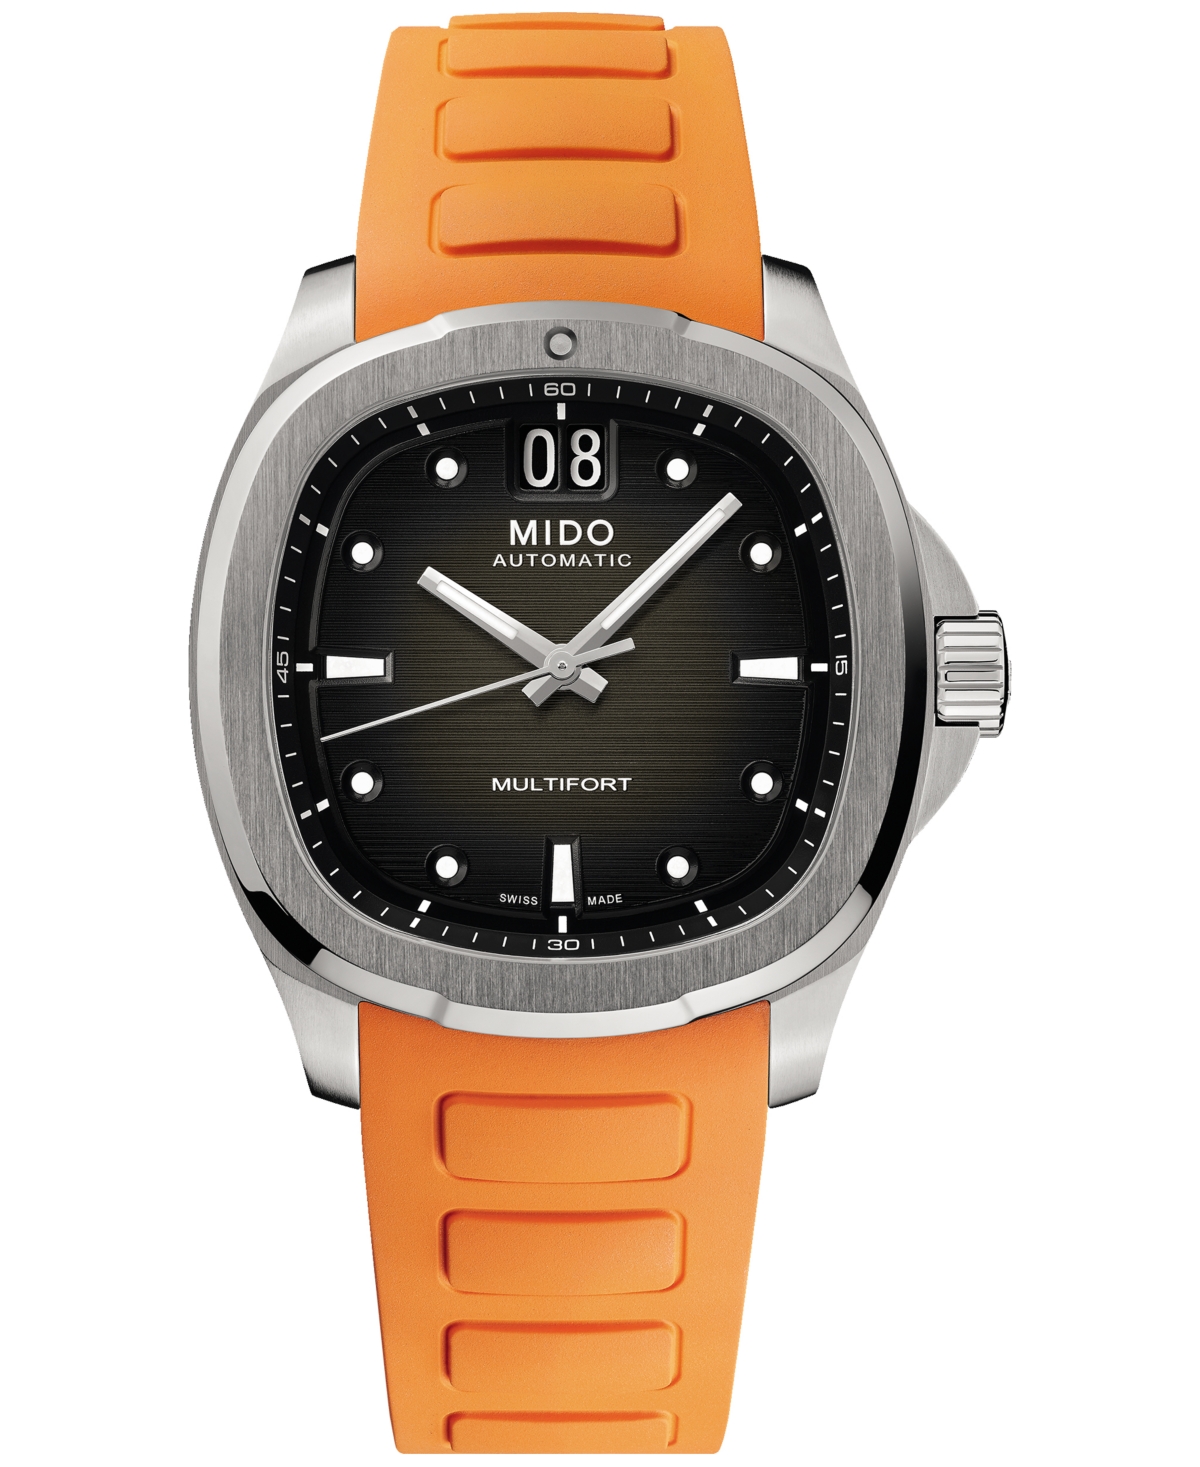 Mido Men's Swiss Automatic Multifort Orange Rubber Strap Watch 41mm In Grey